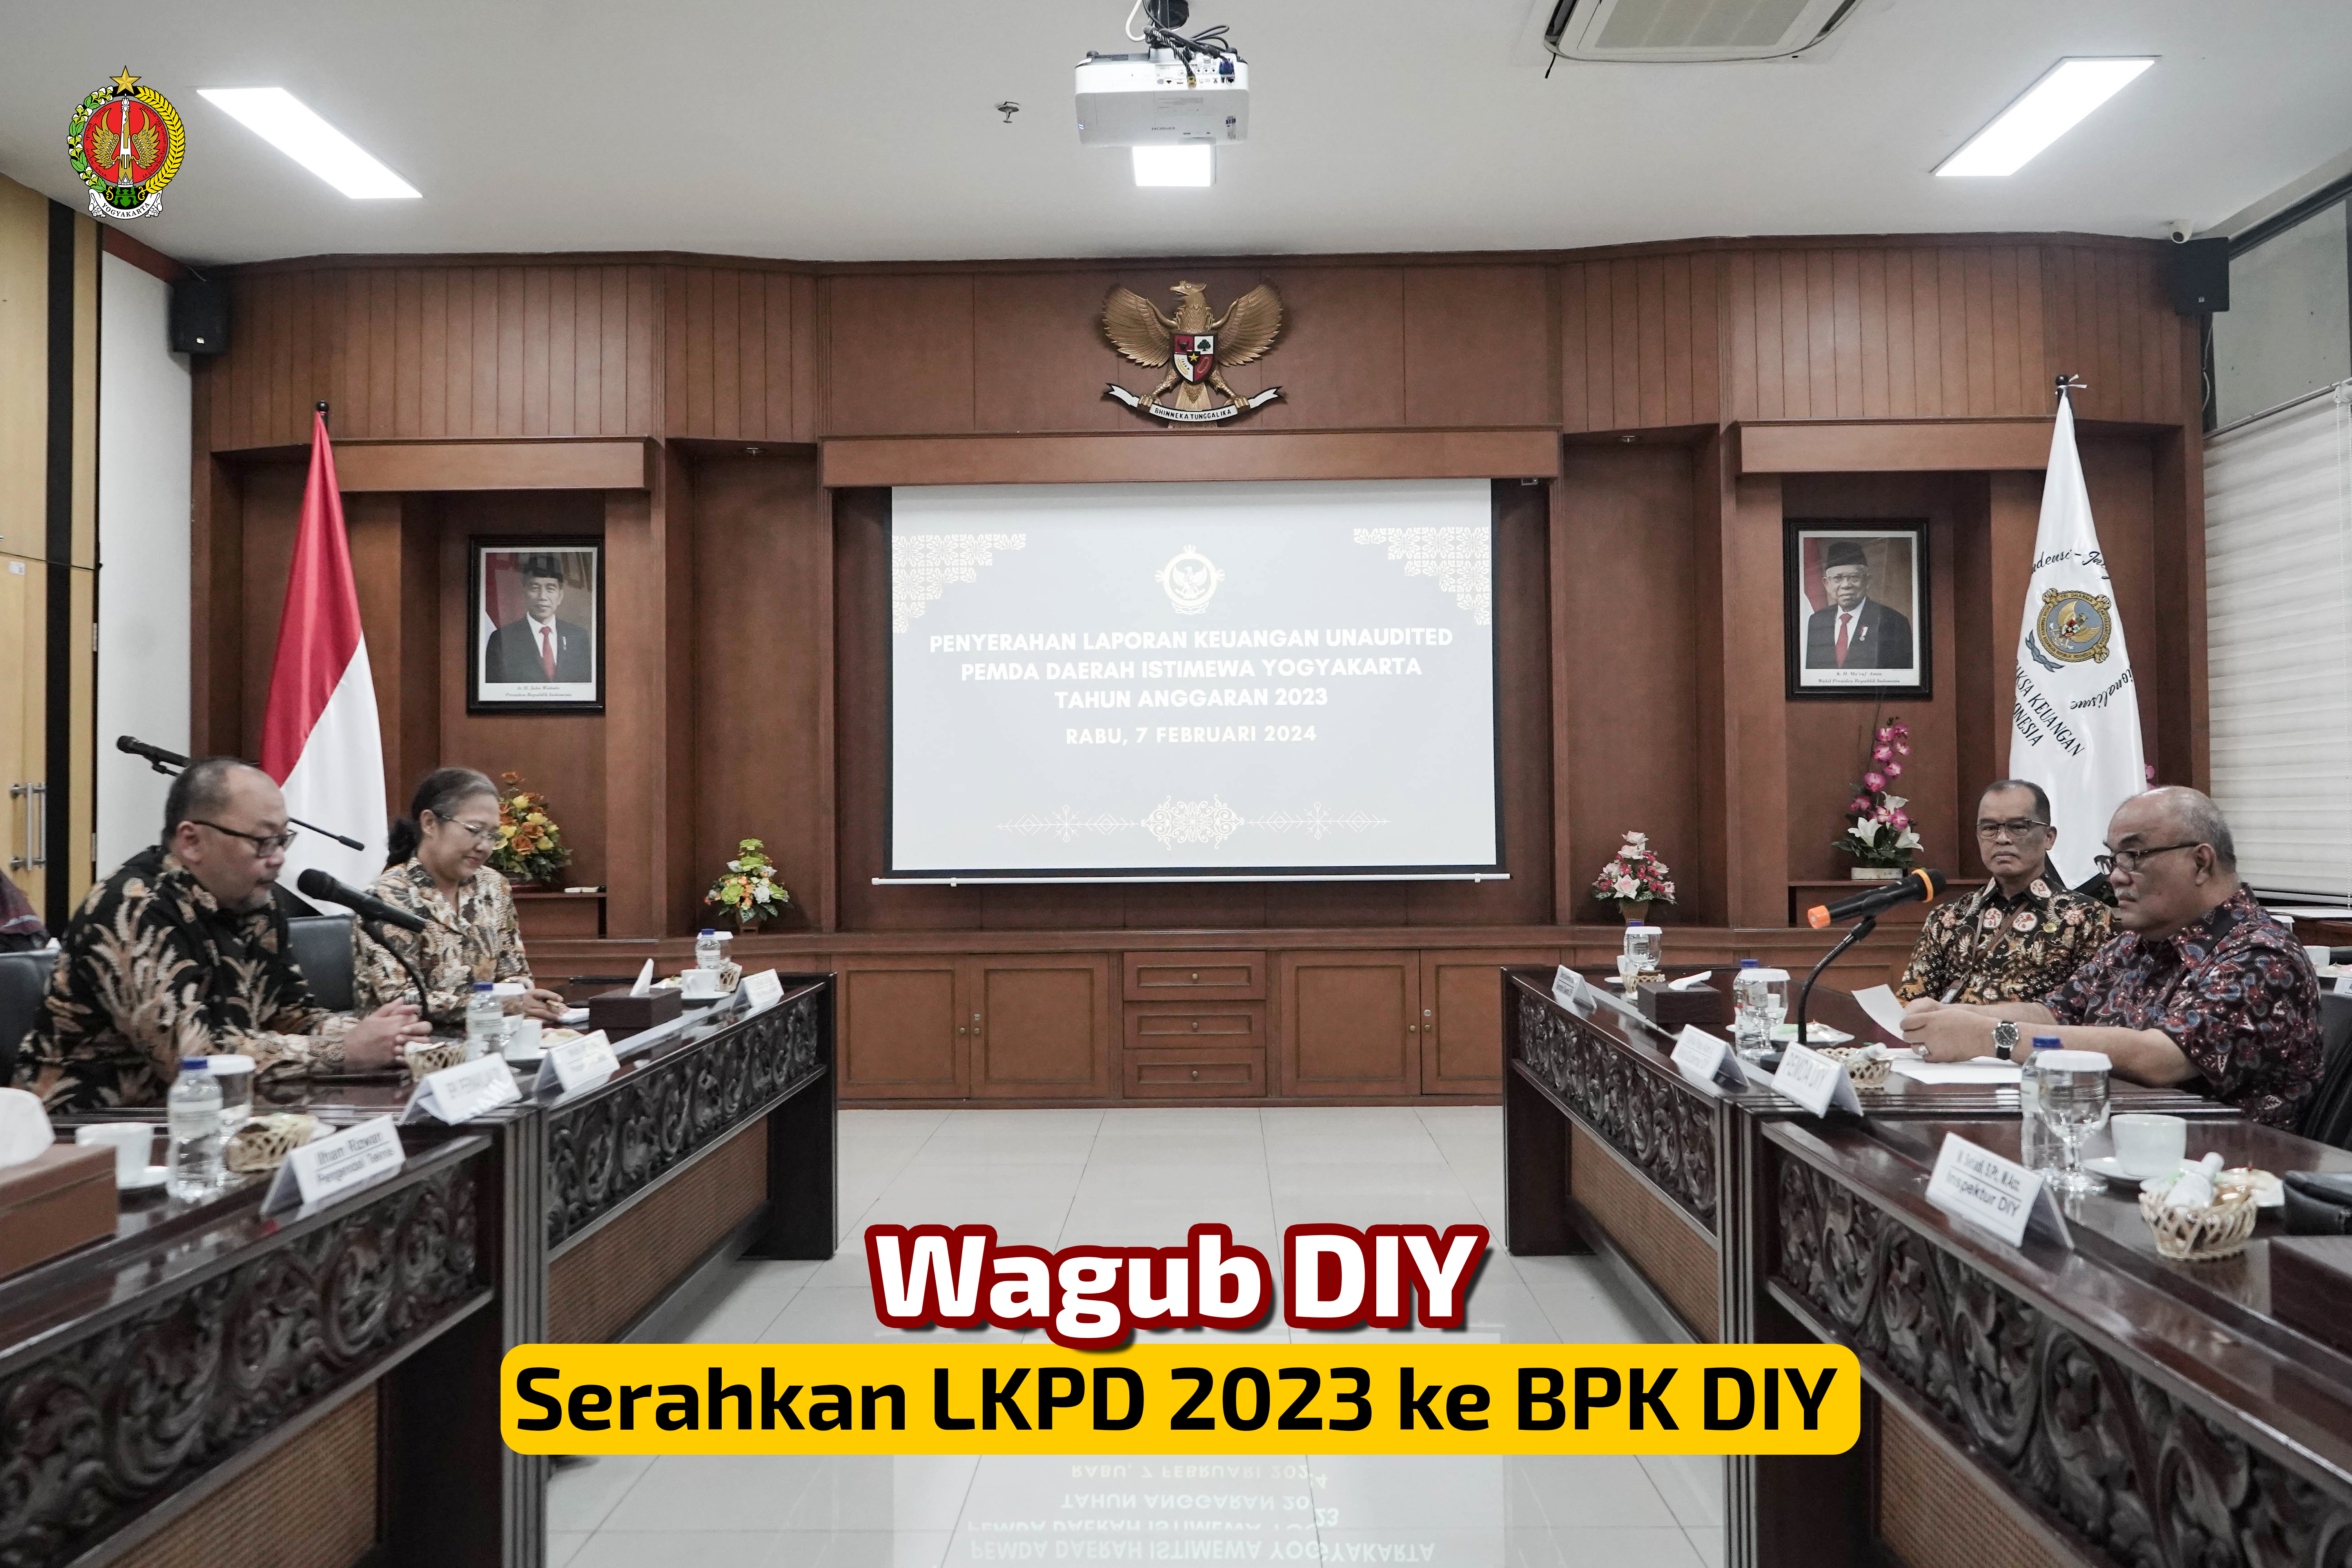  Wagub DIY Serahkan LKPD 2023 ke BPK DIY